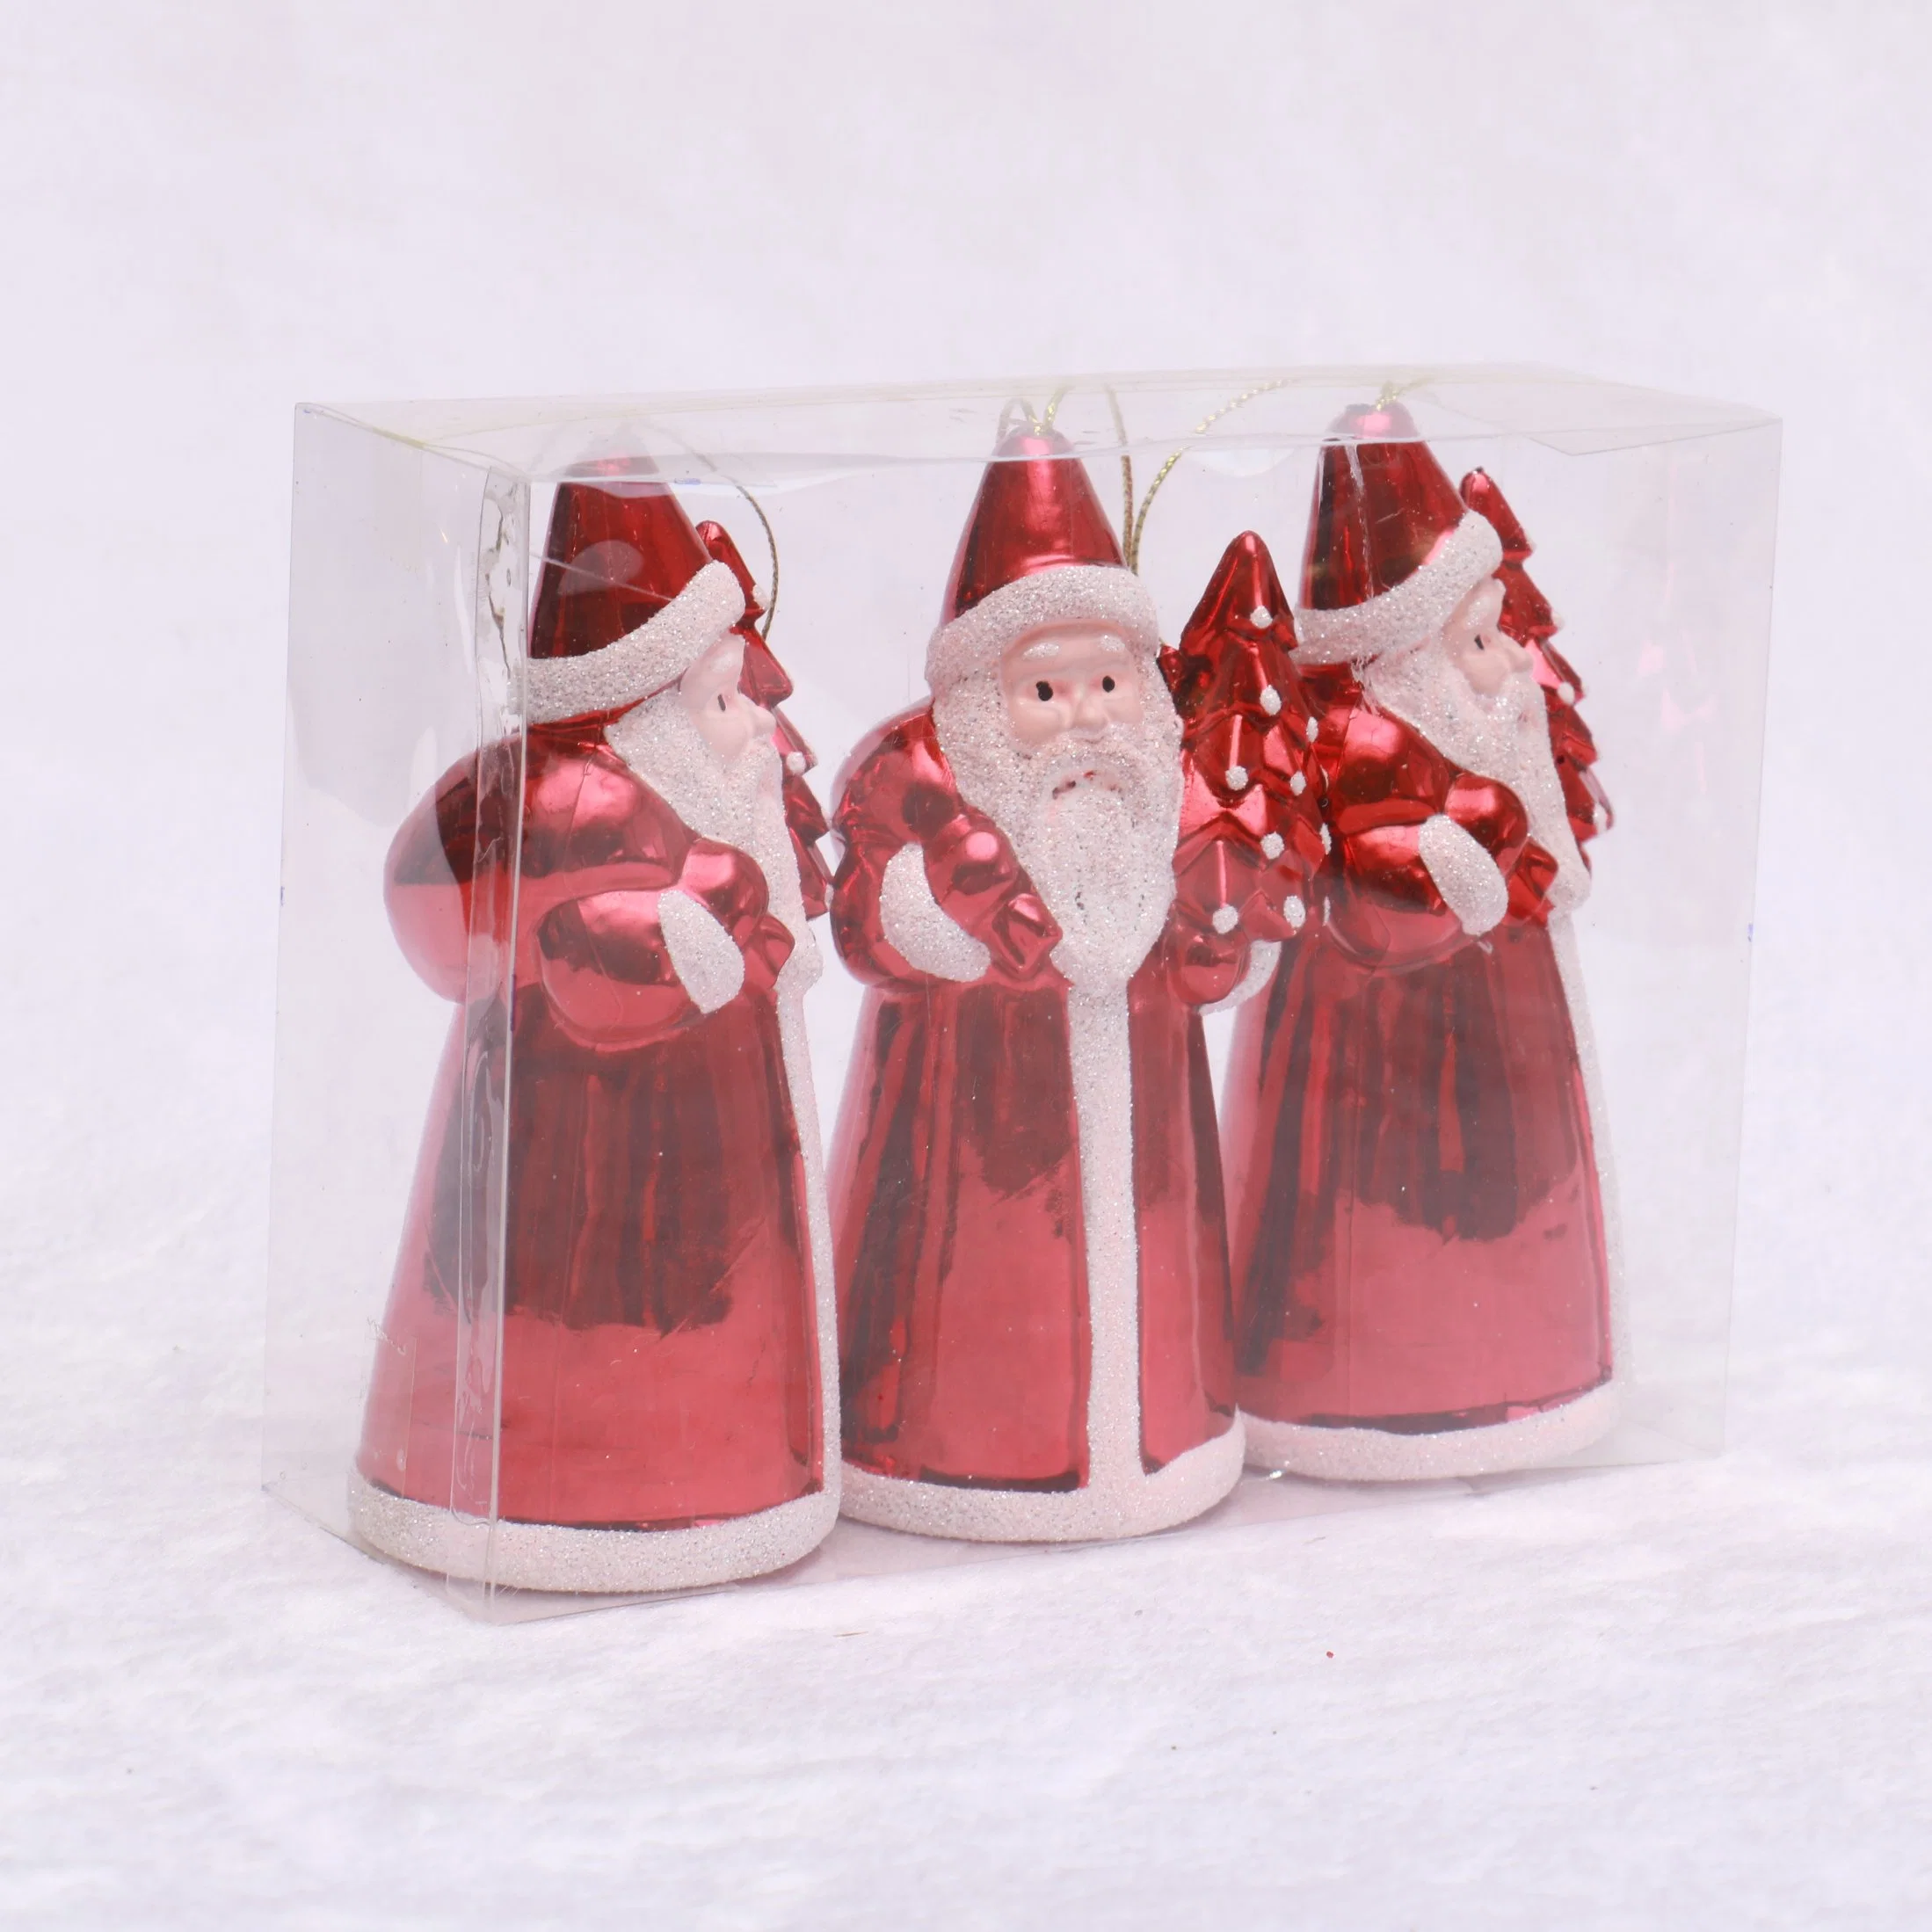 Le plastique casse-noisette Décoration de Noël avec peint ornement suspendu